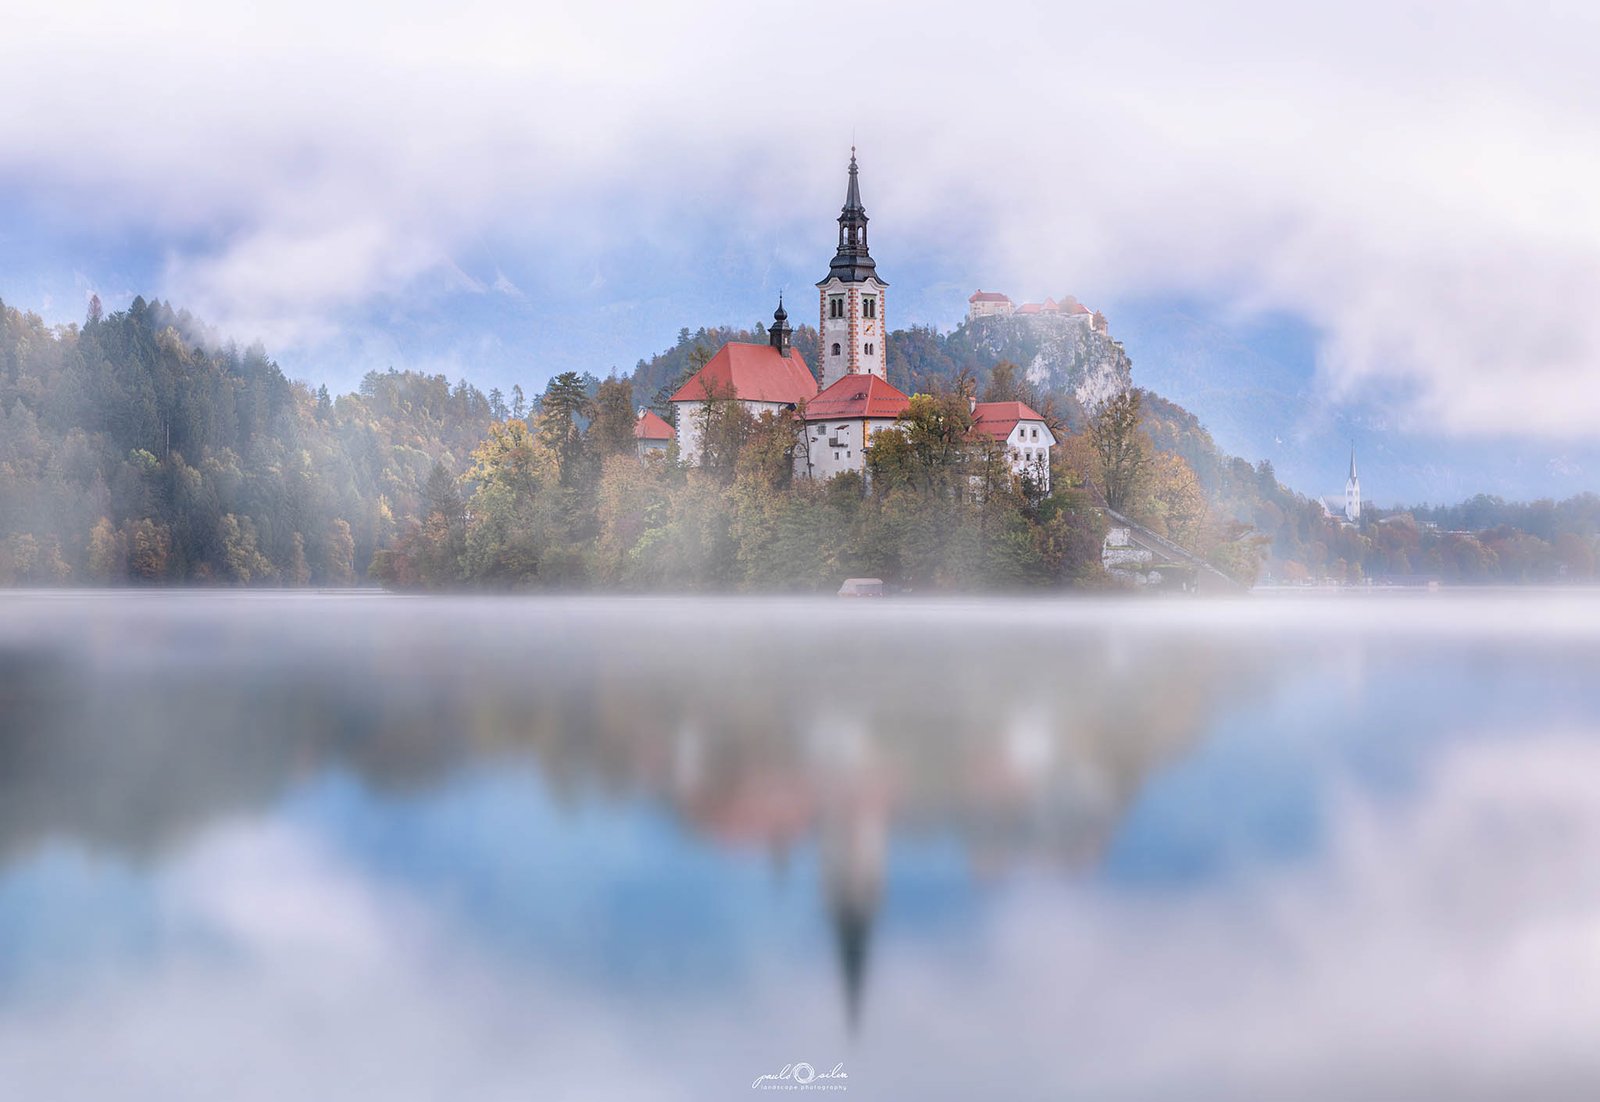 Lake Bled island church, Slovenia.